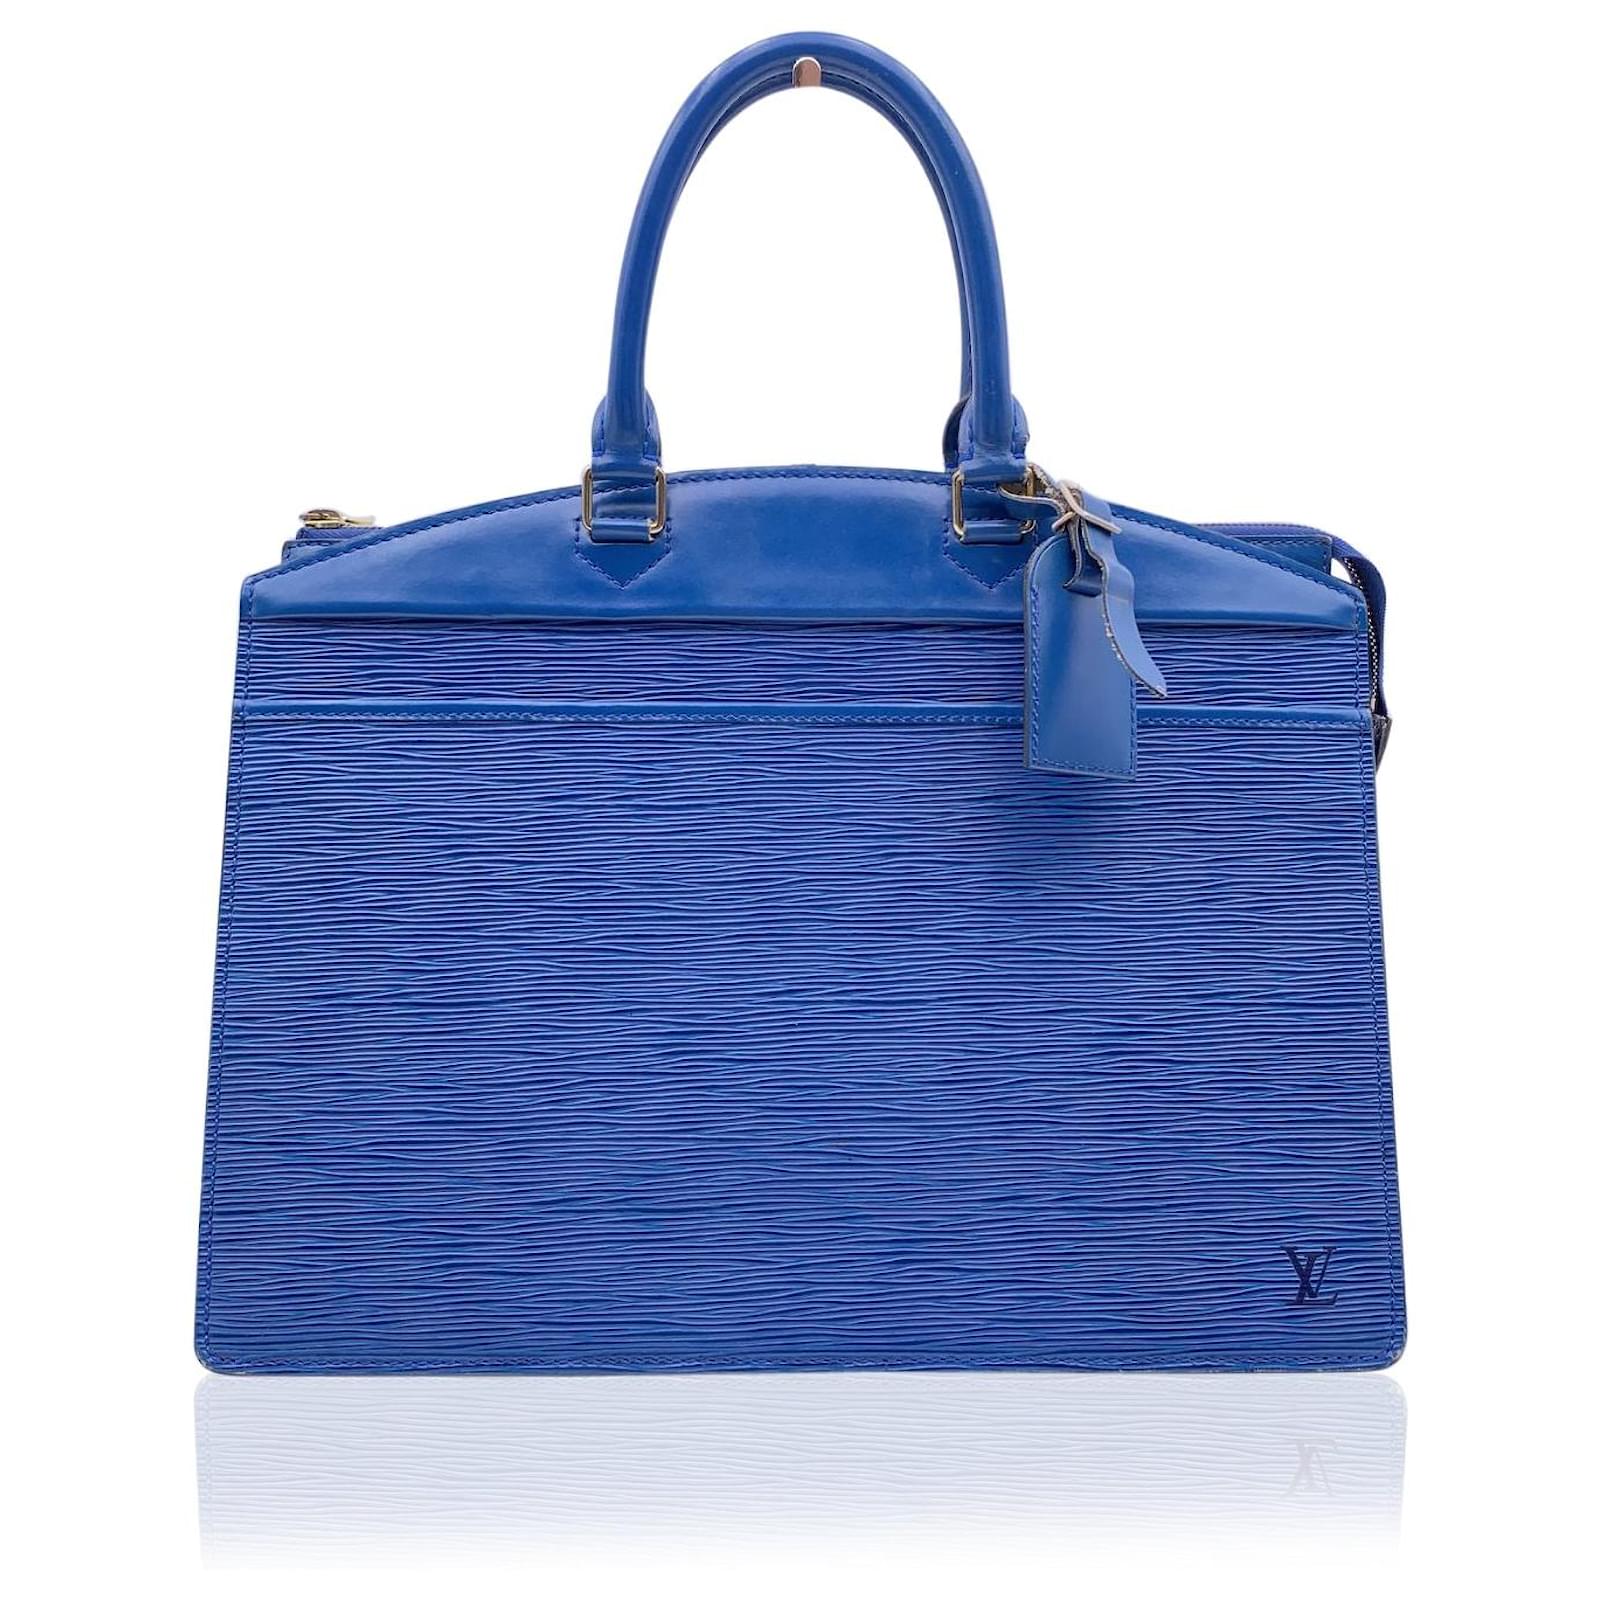 Louis Vuitton Vintage Blue Epi Leather Riviera Satchel Bag Handbag